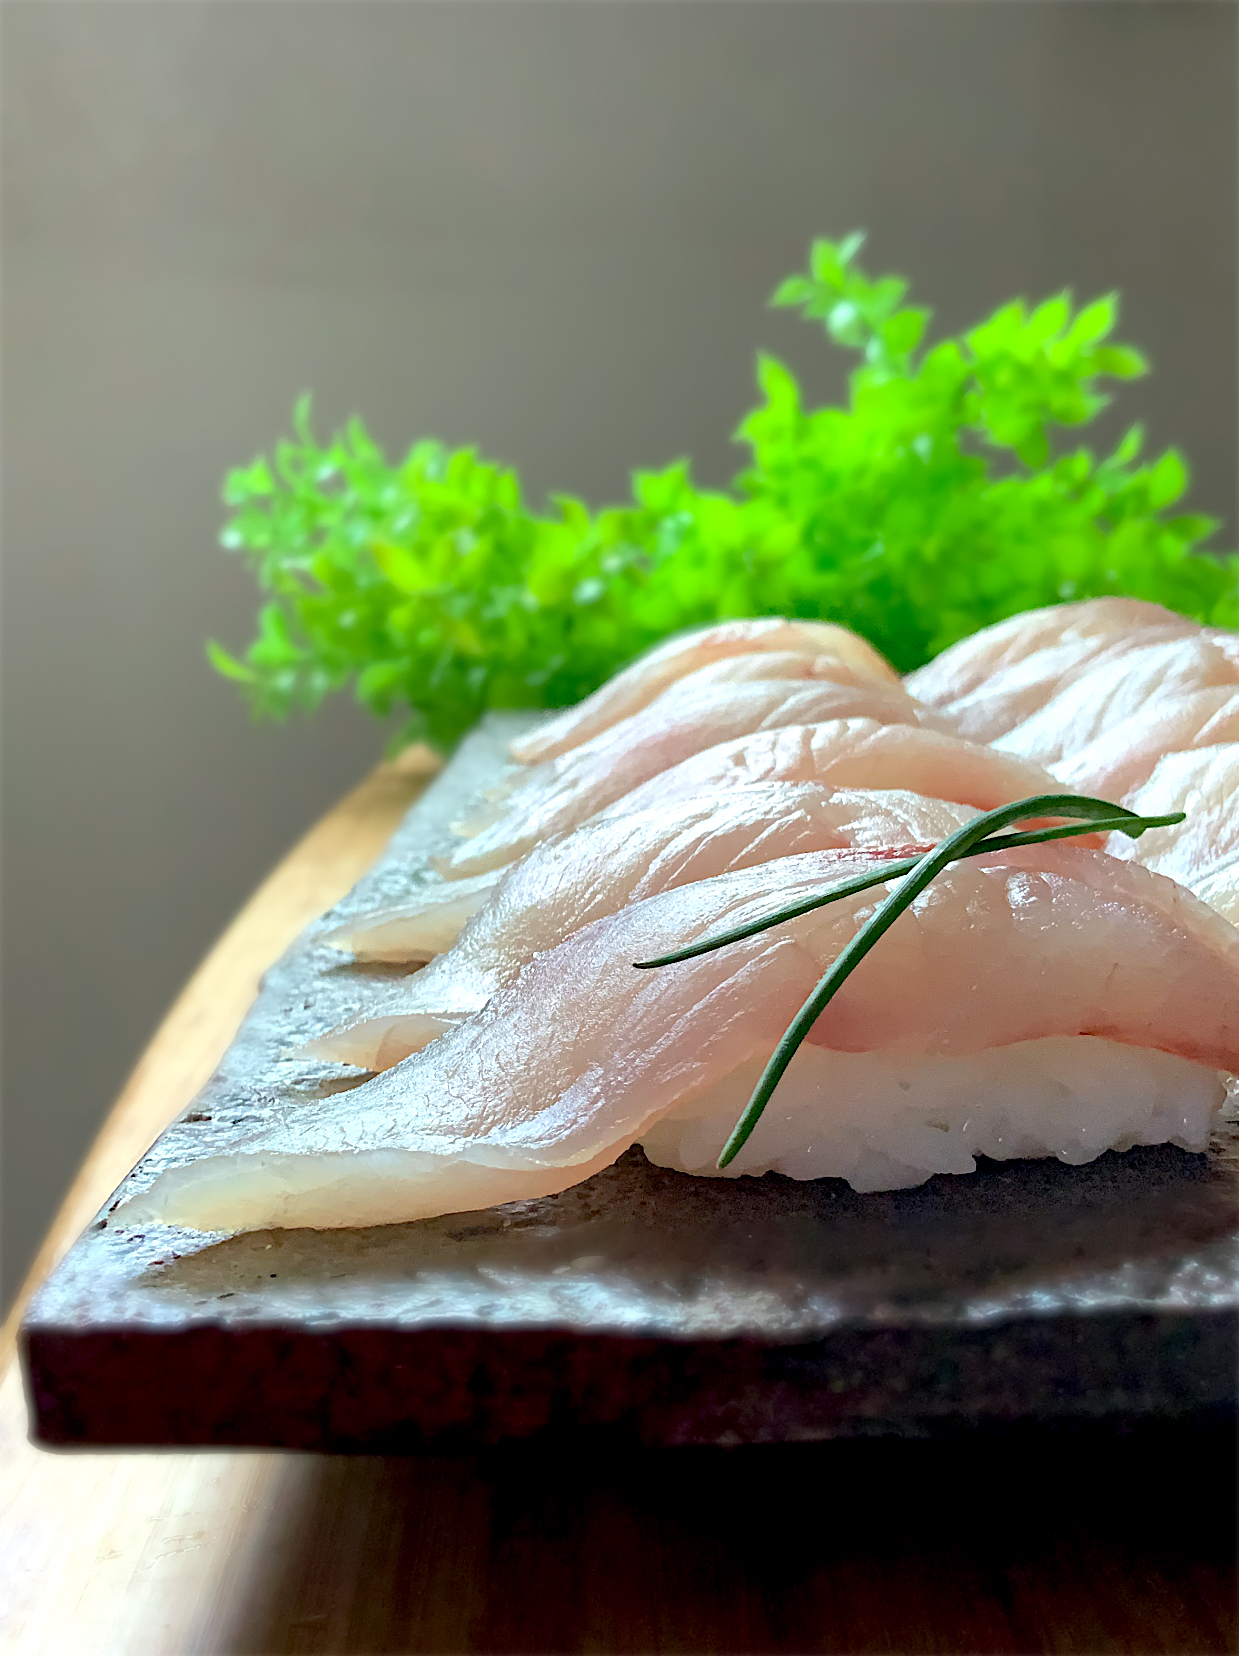 釣り魚 ヒラマサ の握り寿司 お寿司グランプリ21 ヤマサ醤油株式会社